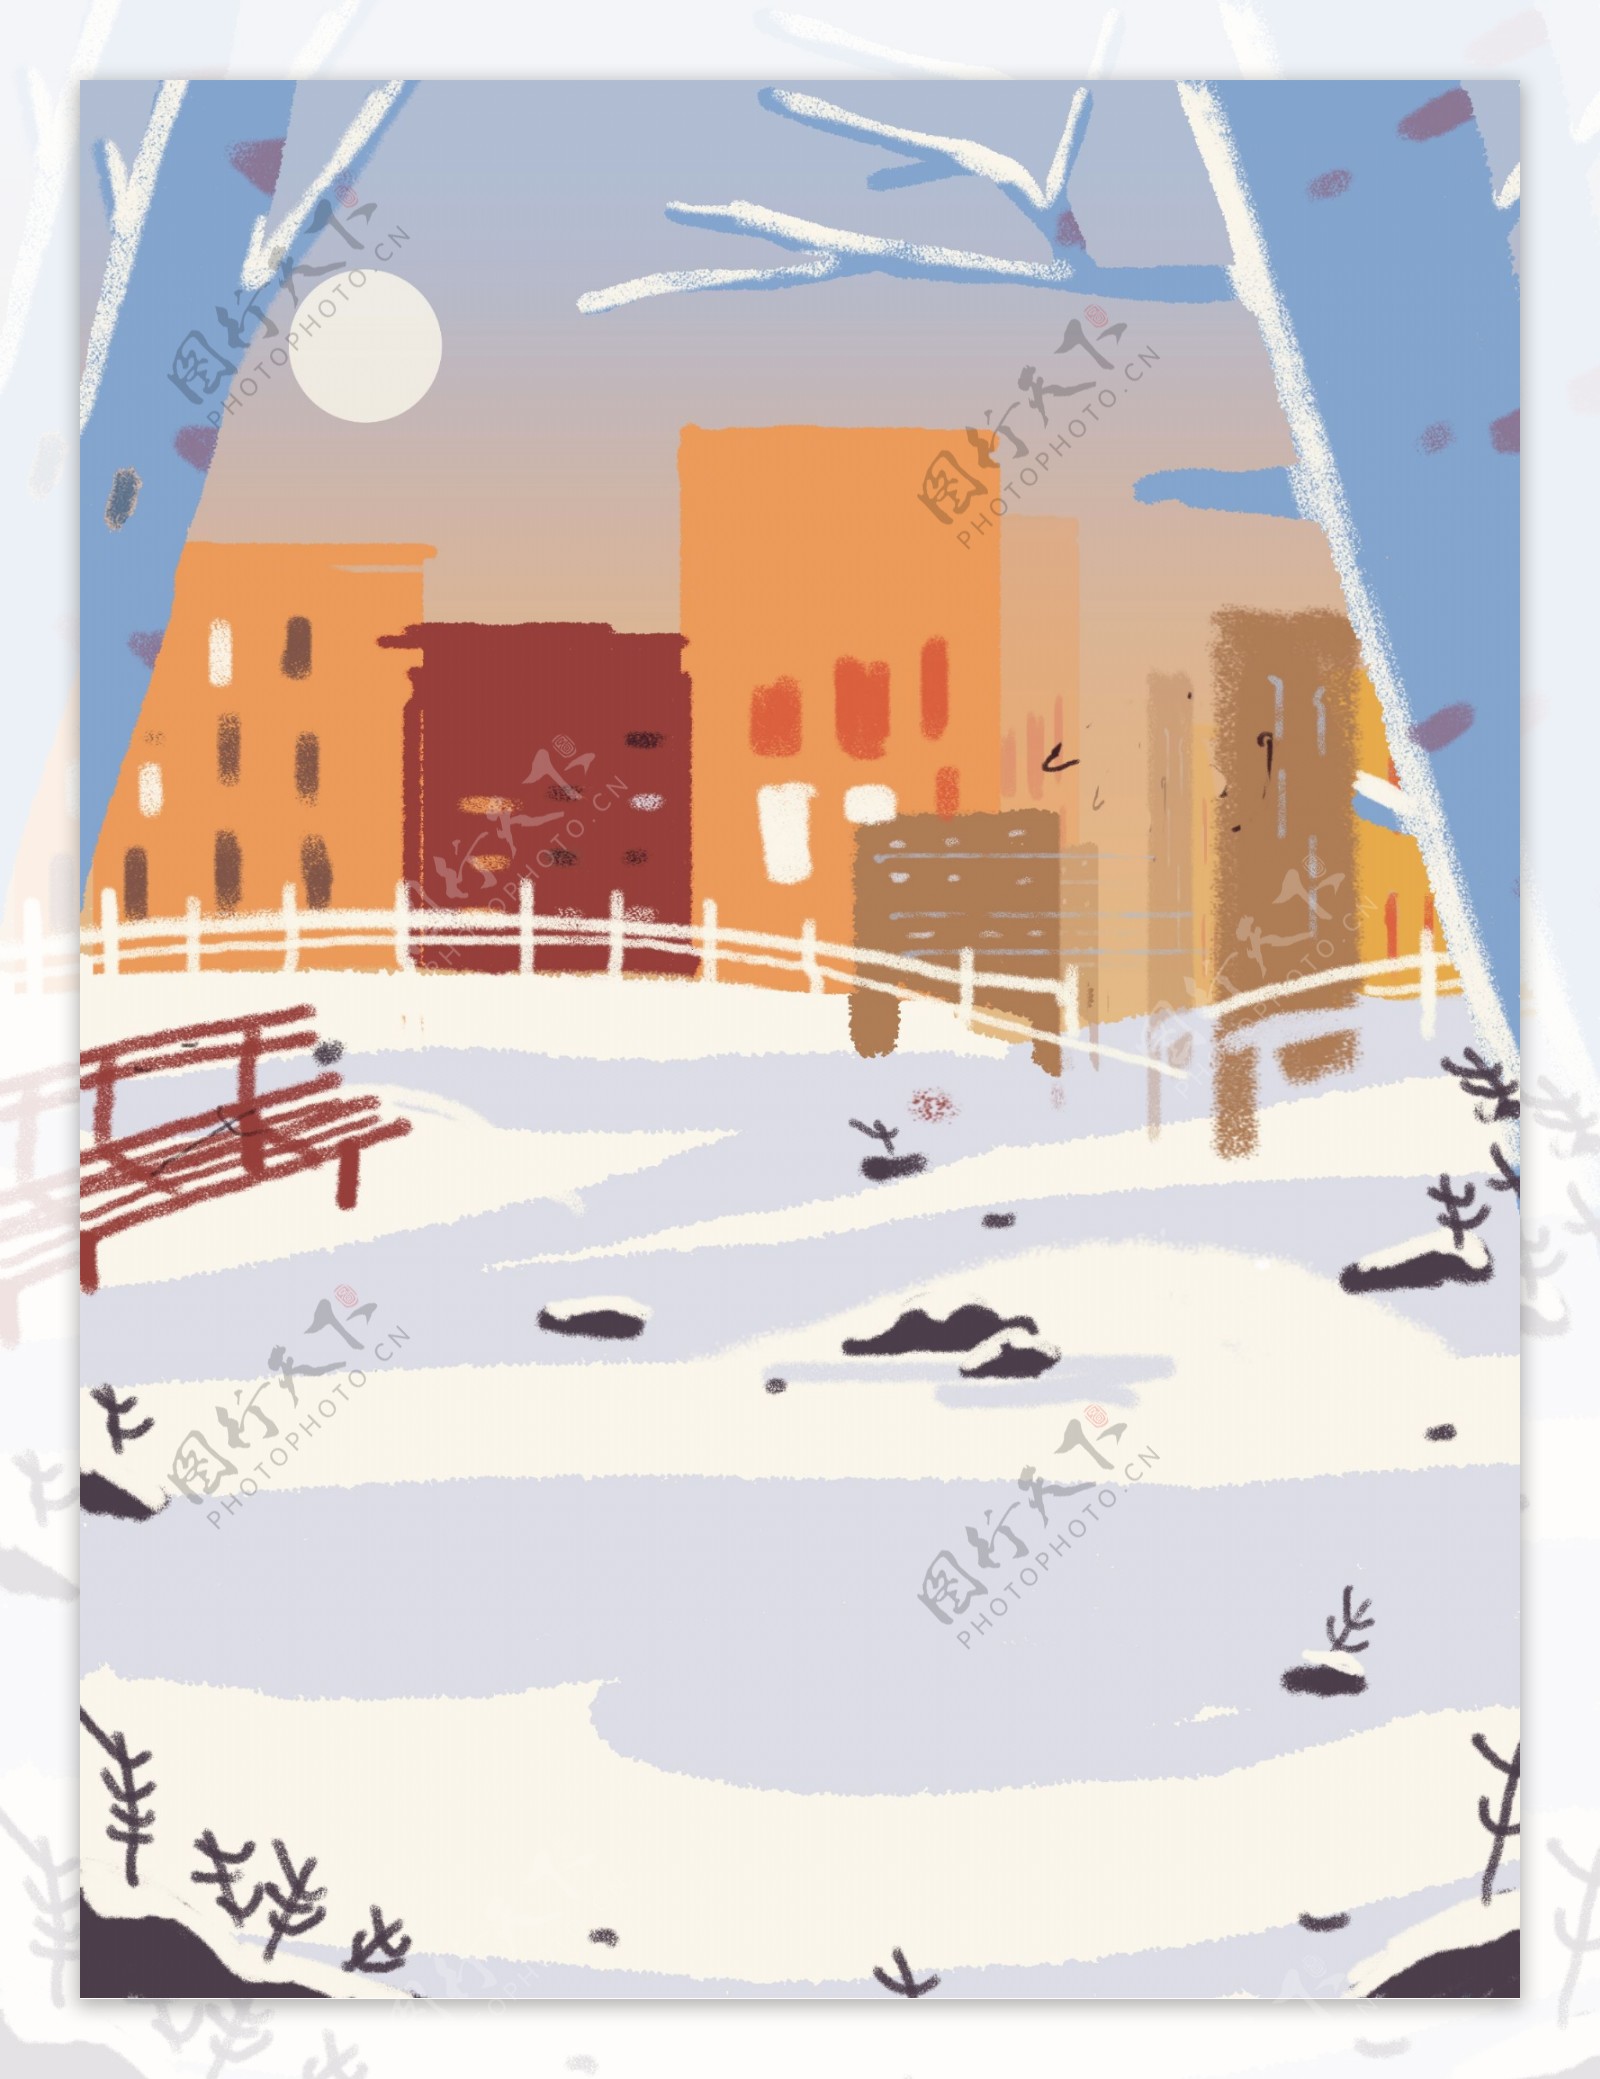 冬季雪地雪景背景设计